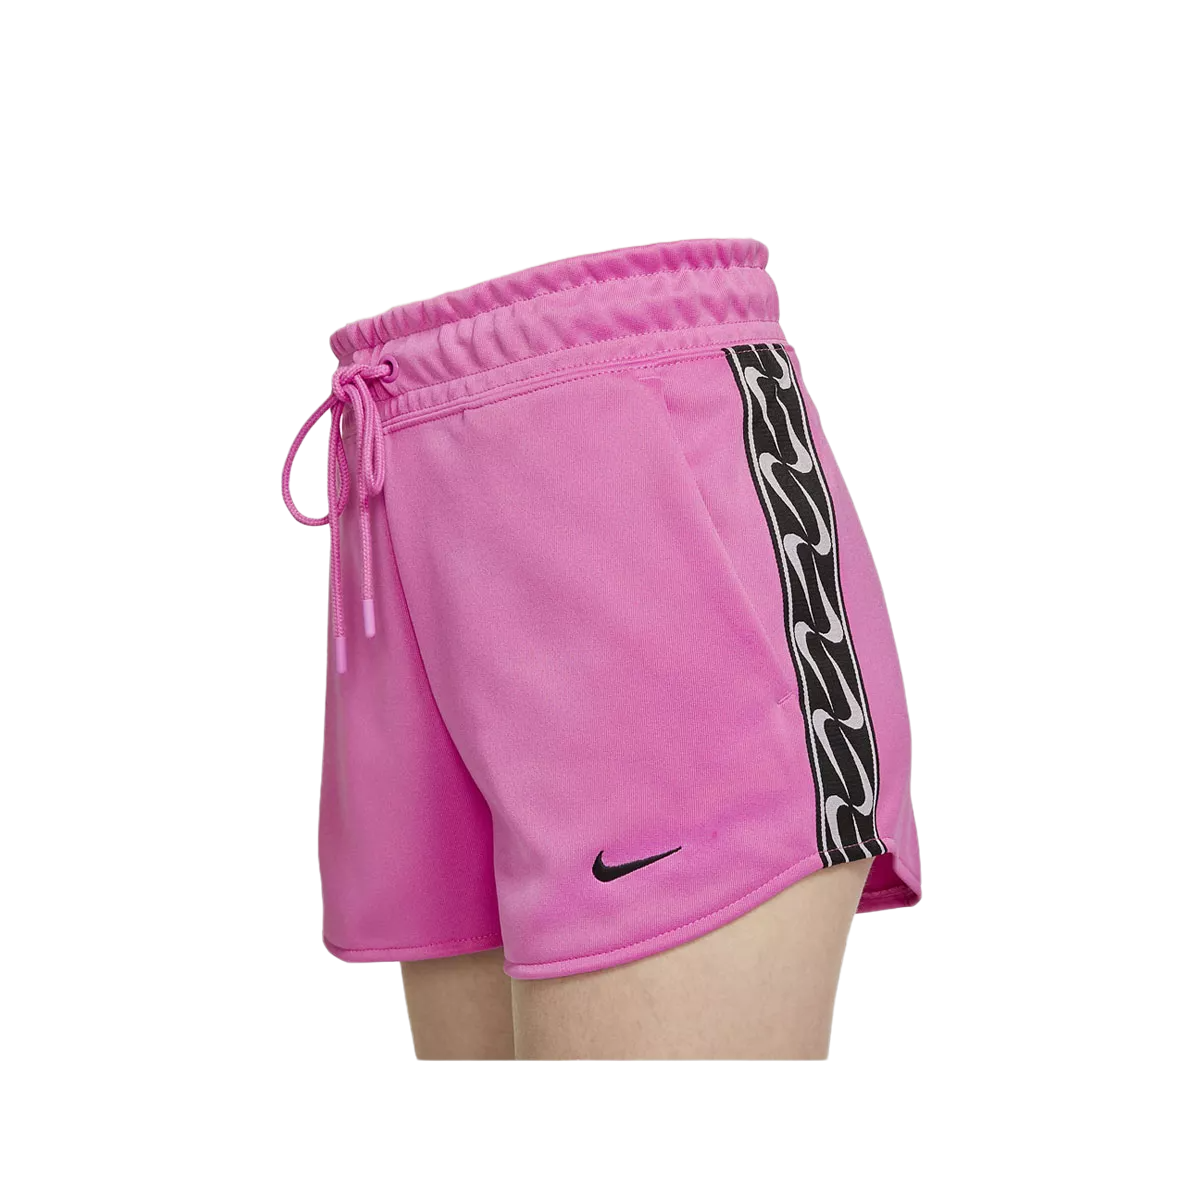 Nike Women's Sportswear Shorts